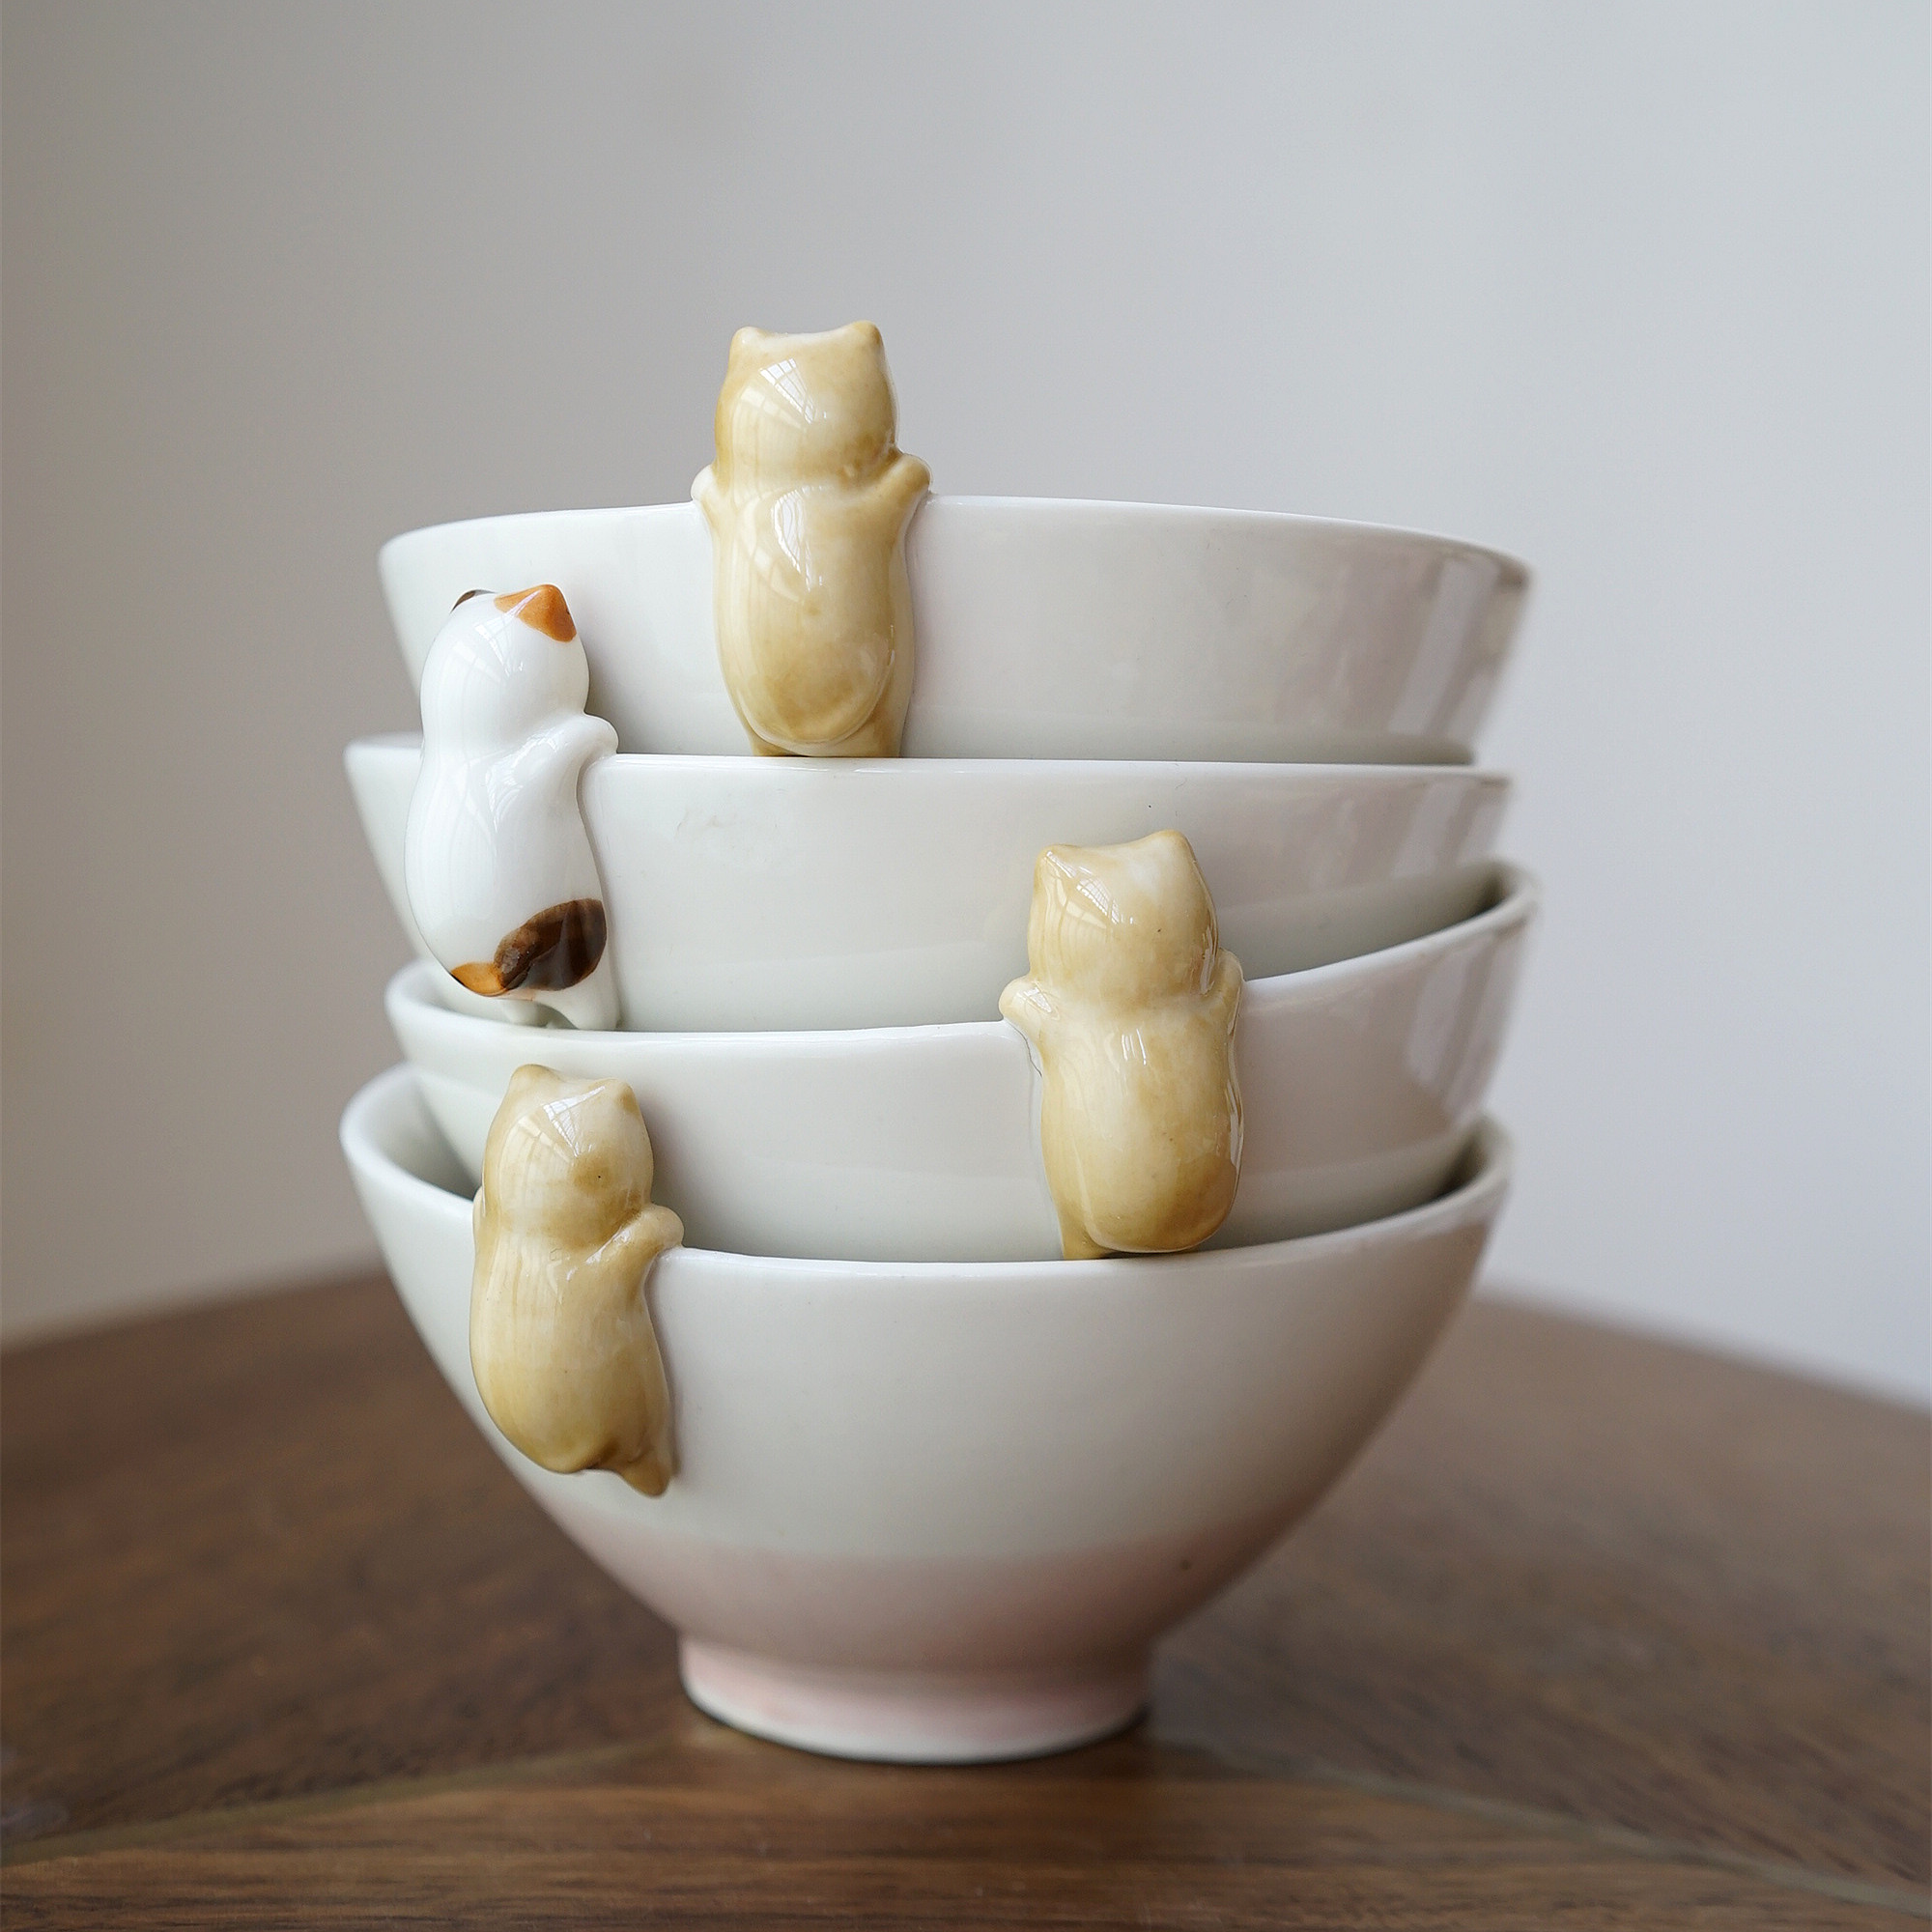 一屋FUNNY日单猫咪陶瓷碗 可爱卡通立体米饭碗 甜品碗 创意家用碗